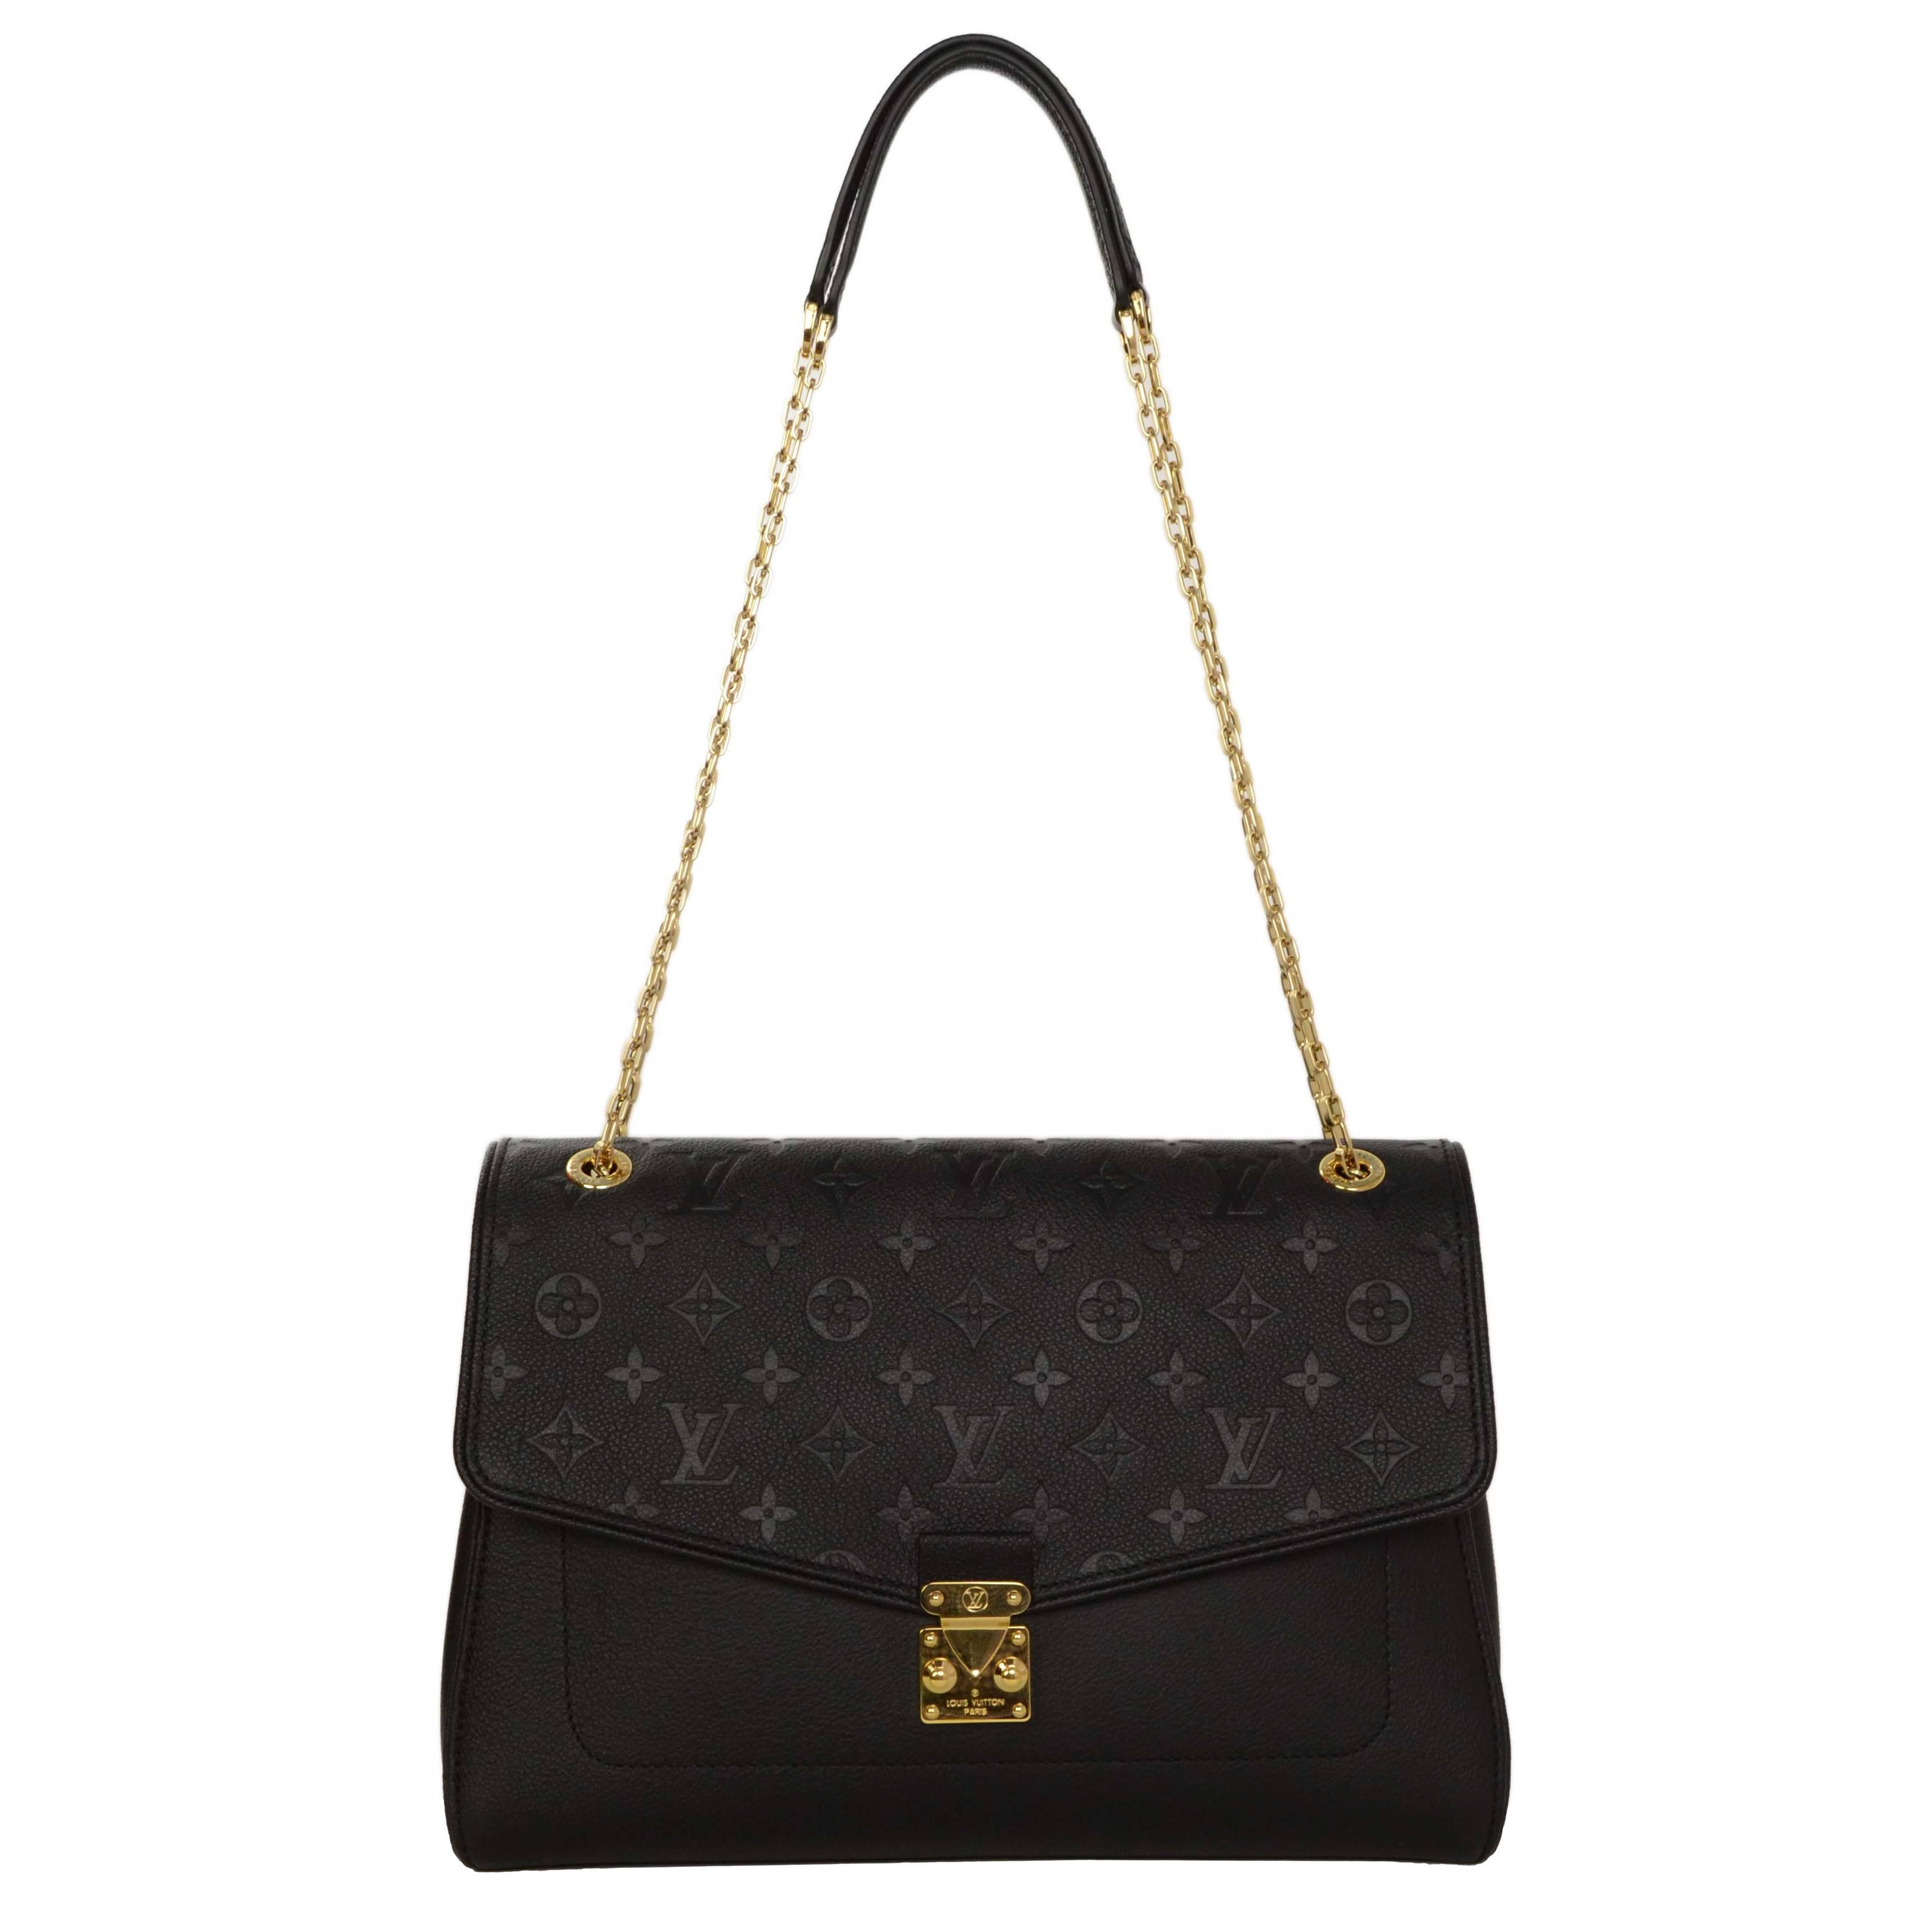 Louis Vuitton '15 Black Leather Empreinte St. Germain MM Bag